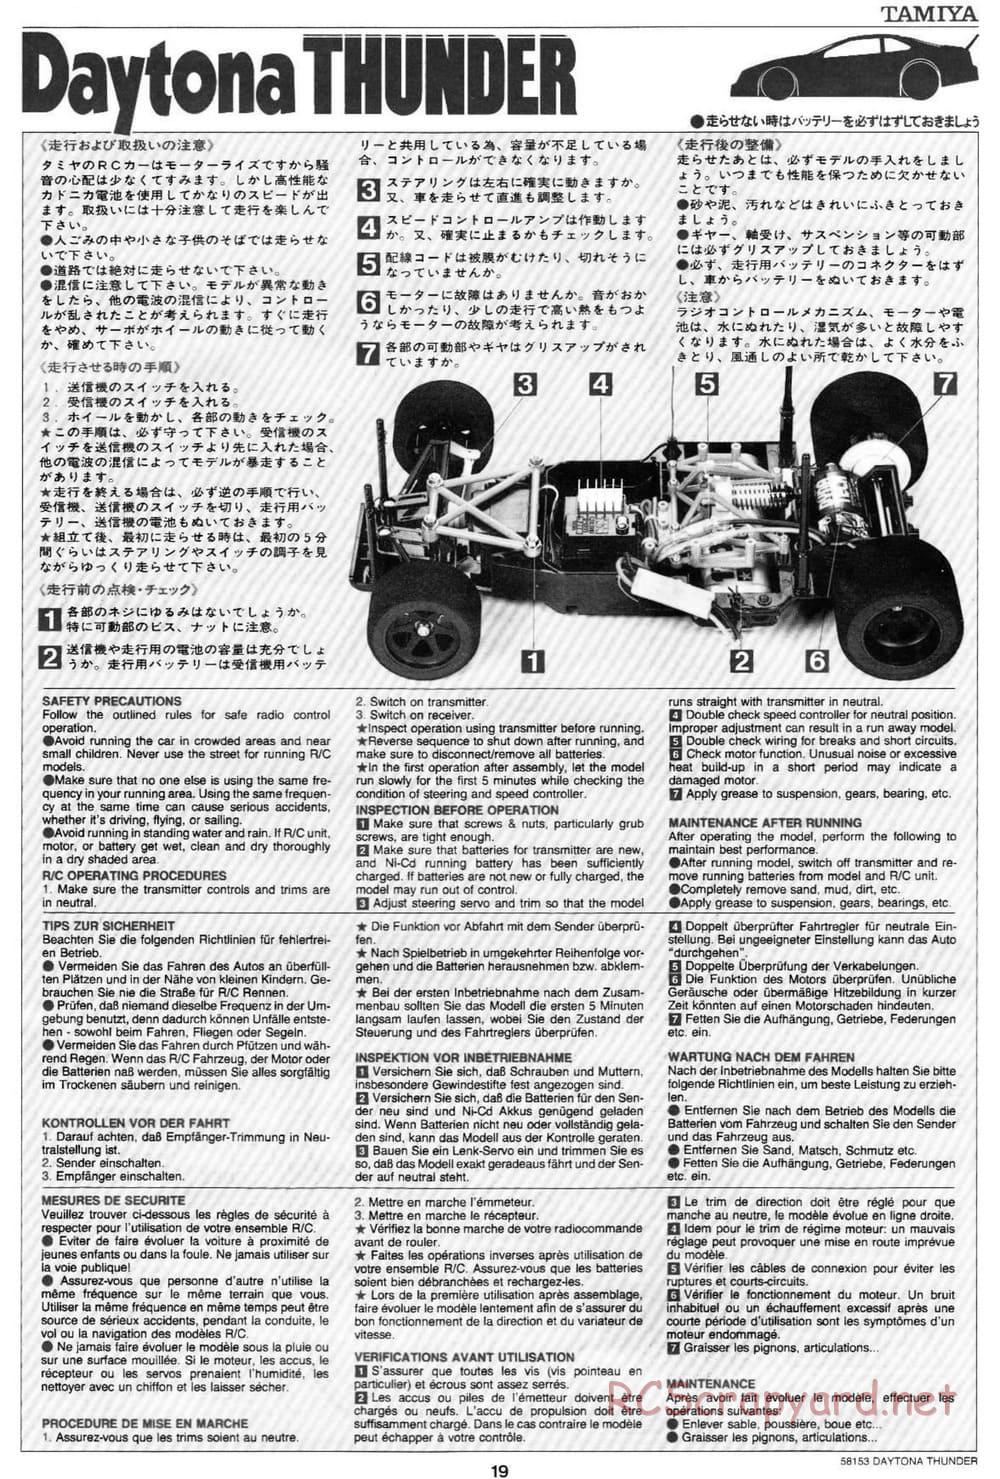 Tamiya - Daytona Thunder - Group-C Chassis - Manual - Page 20